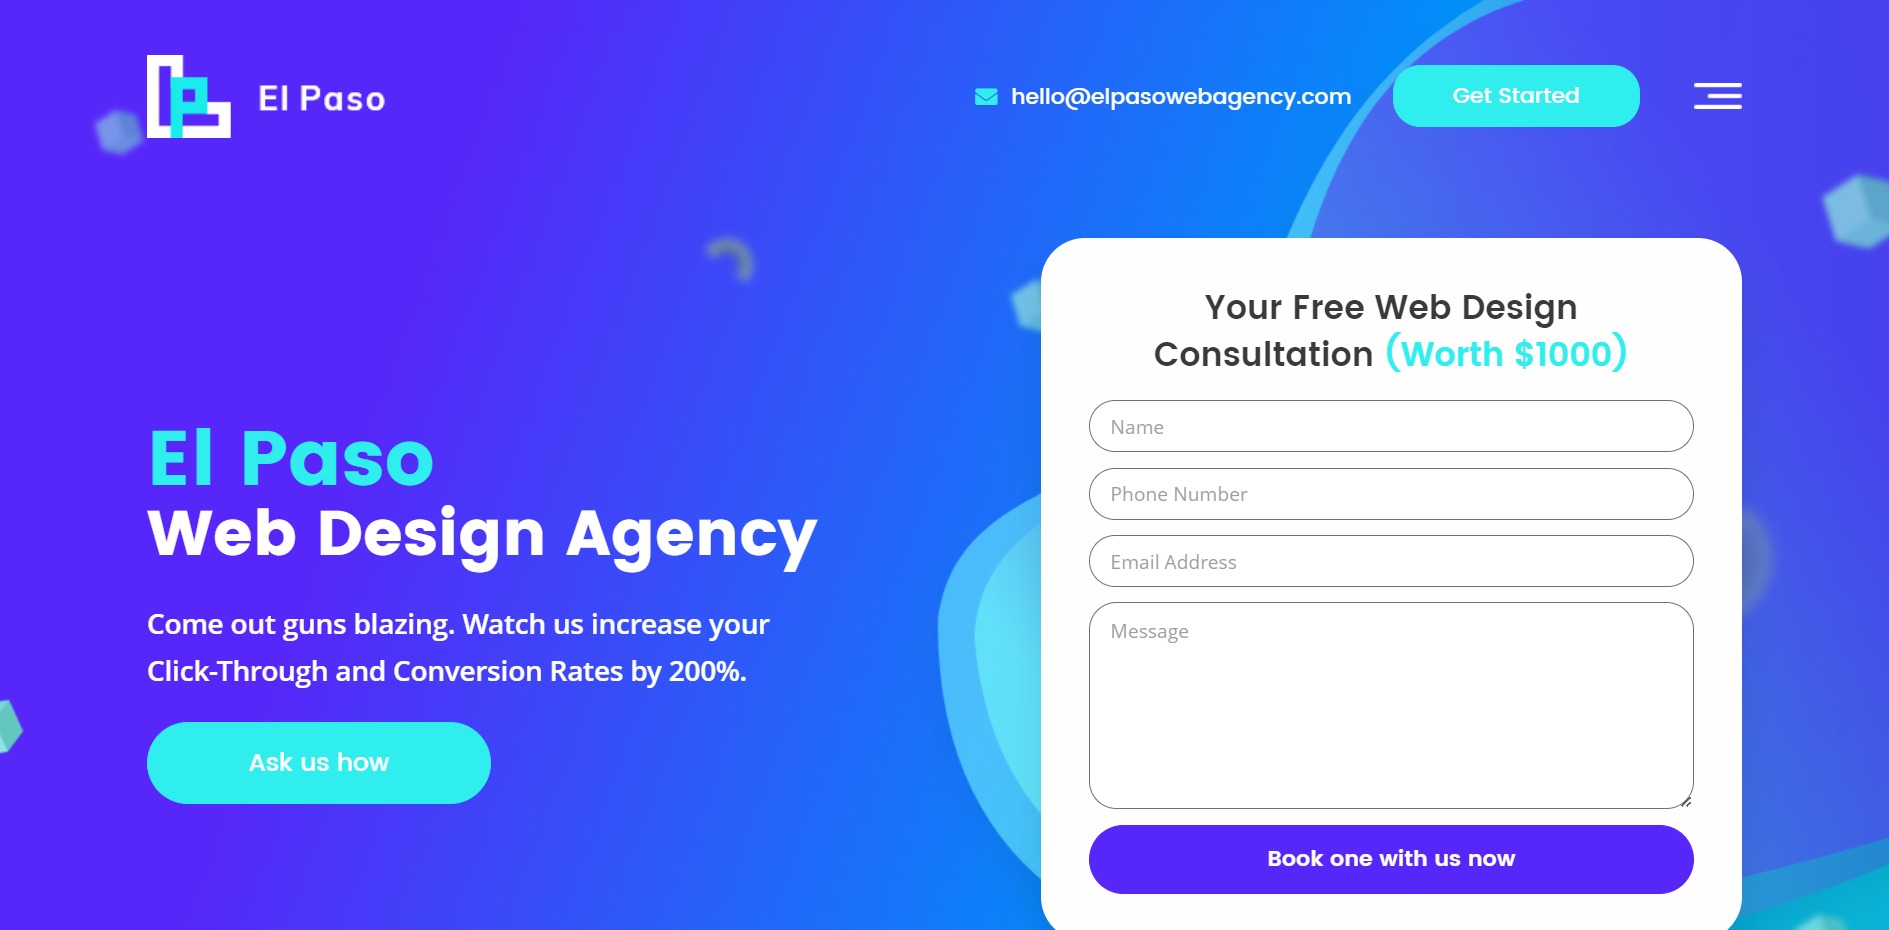 El Paso Web Design Agency